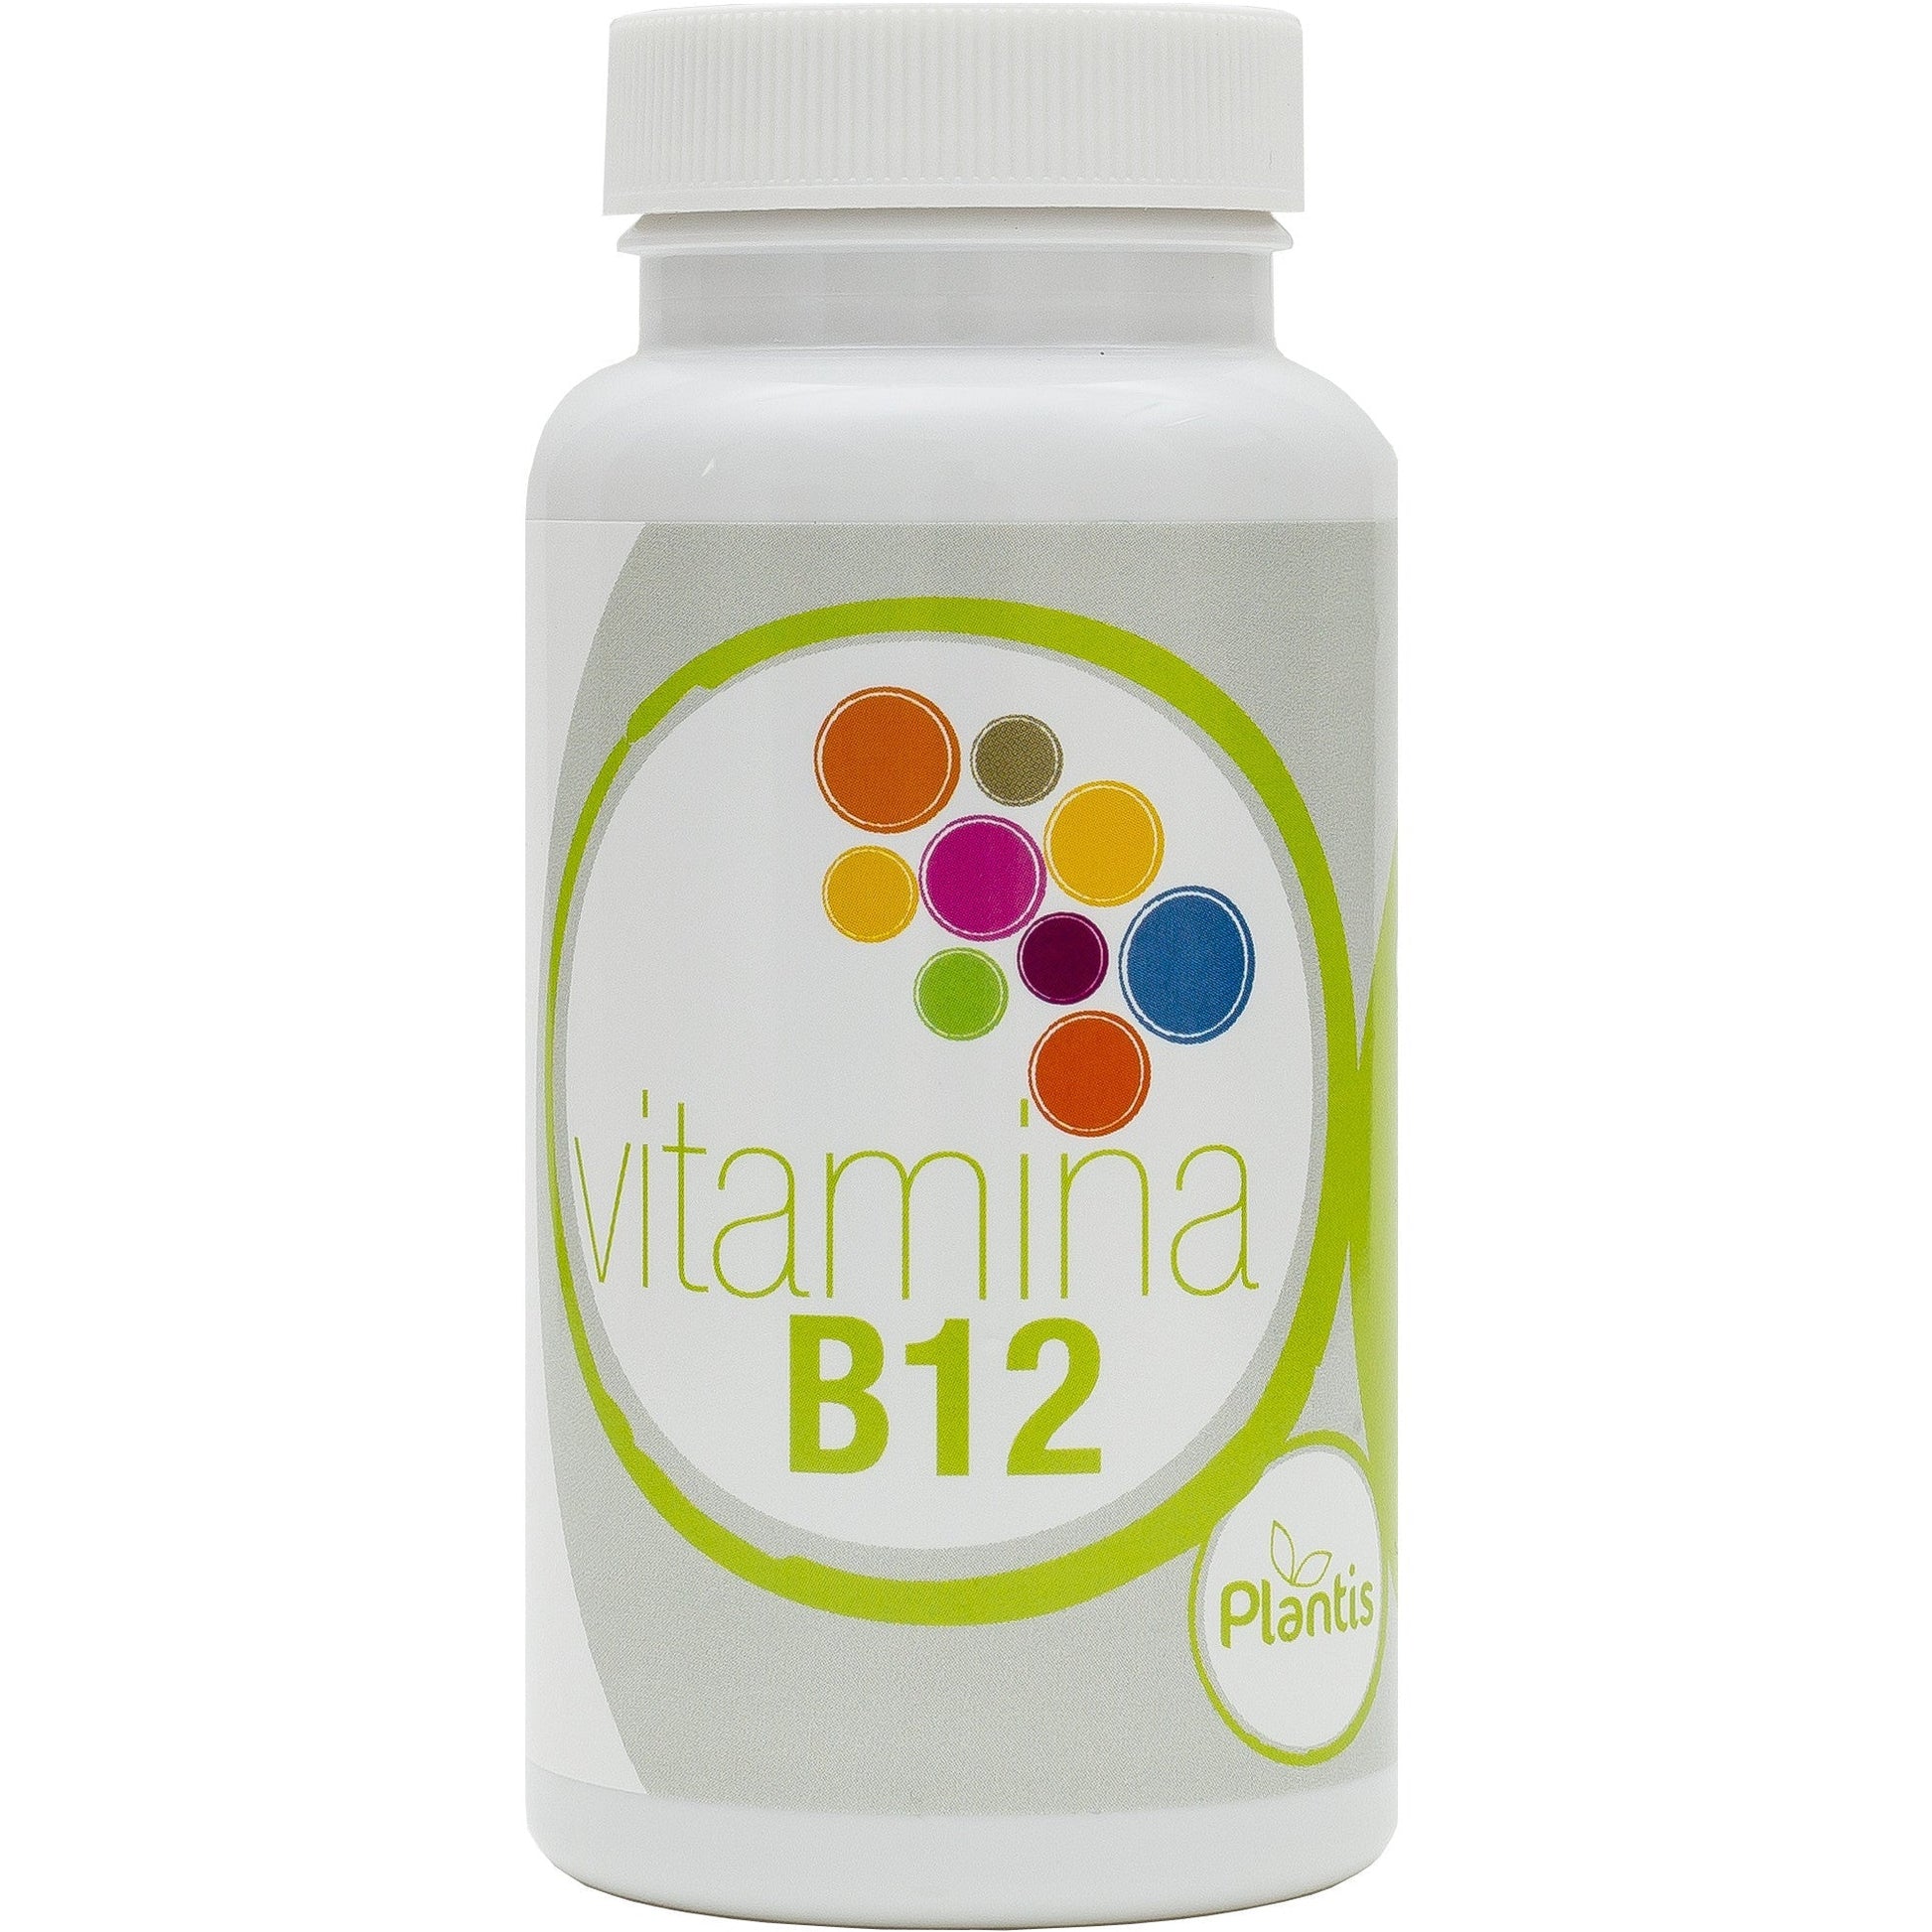 Vitamina B12 90 Capsulas | Plantis - Dietetica Ferrer